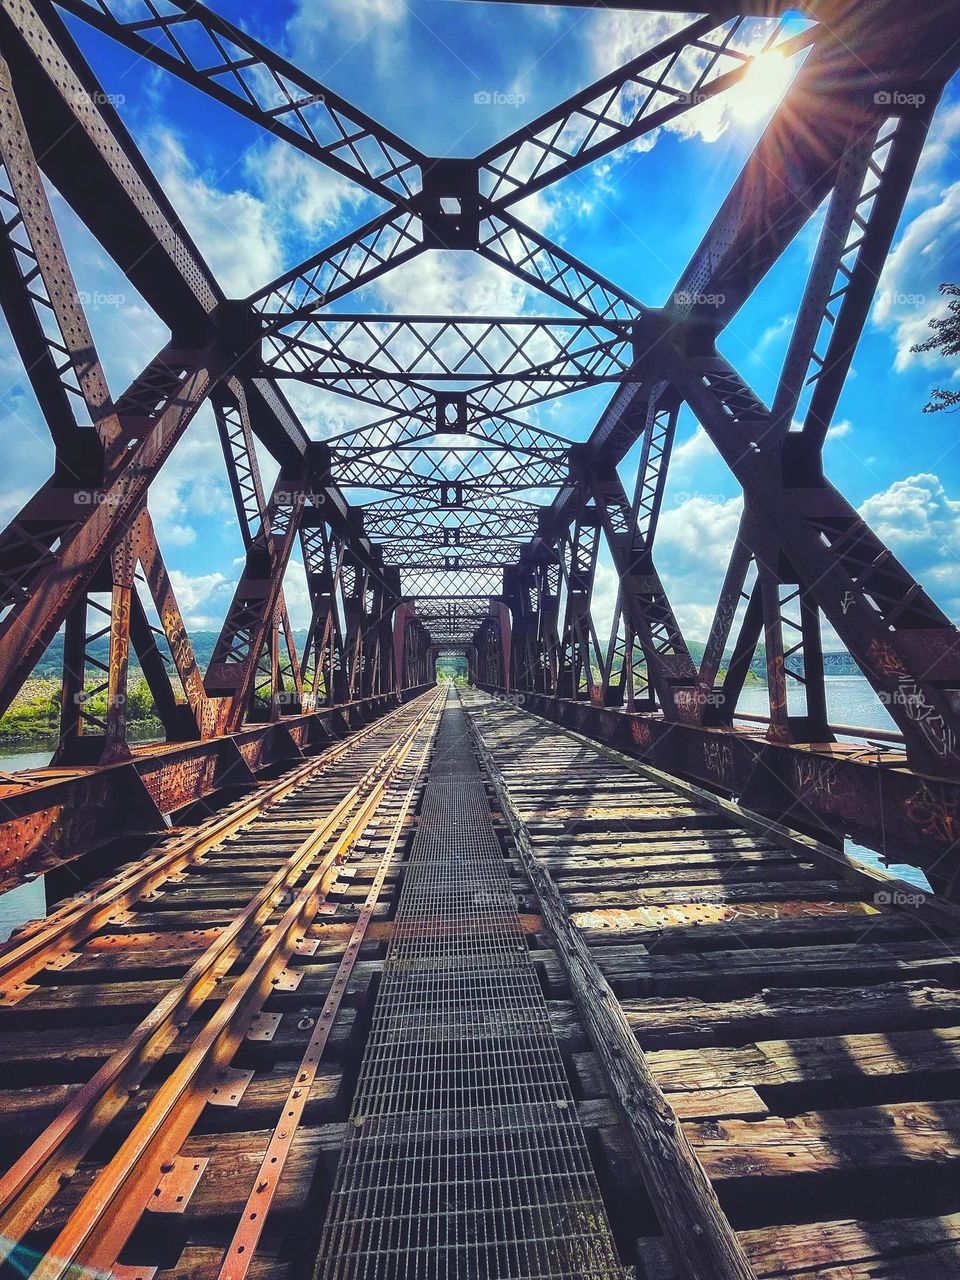 Walking across an old abandoned bridge 